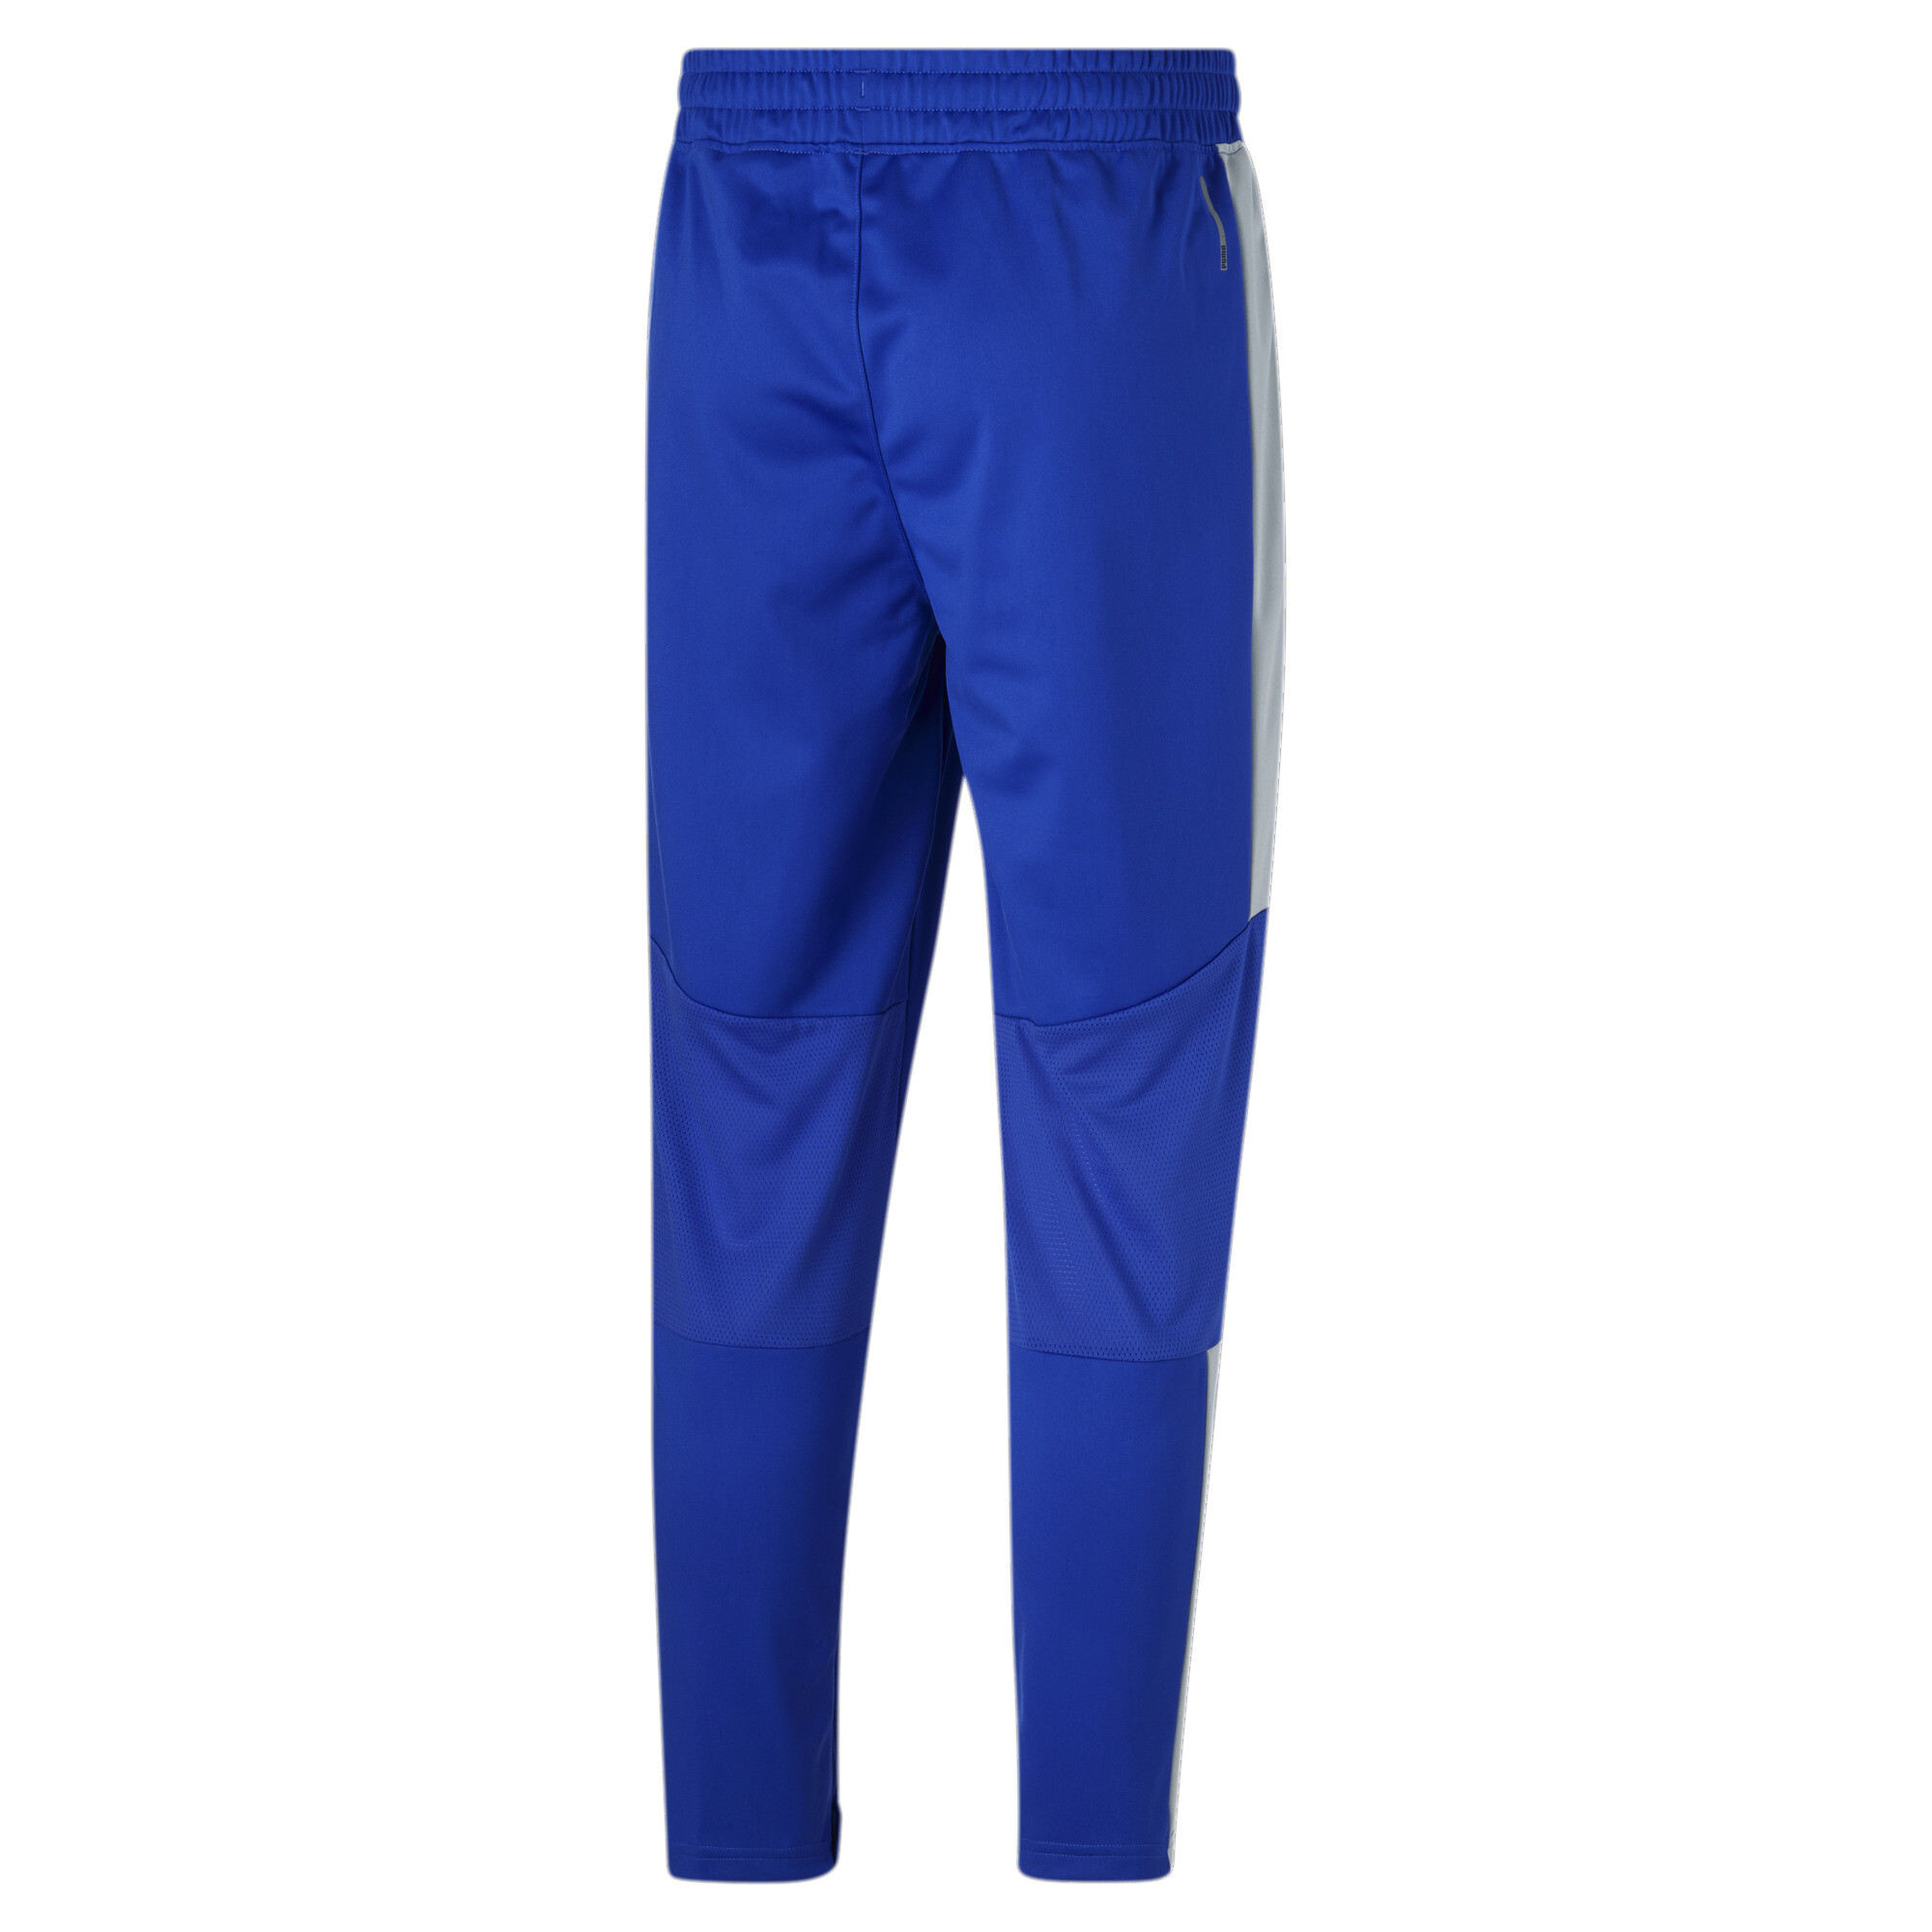 Tek Gear Blue Active Pants Size M - 51% off